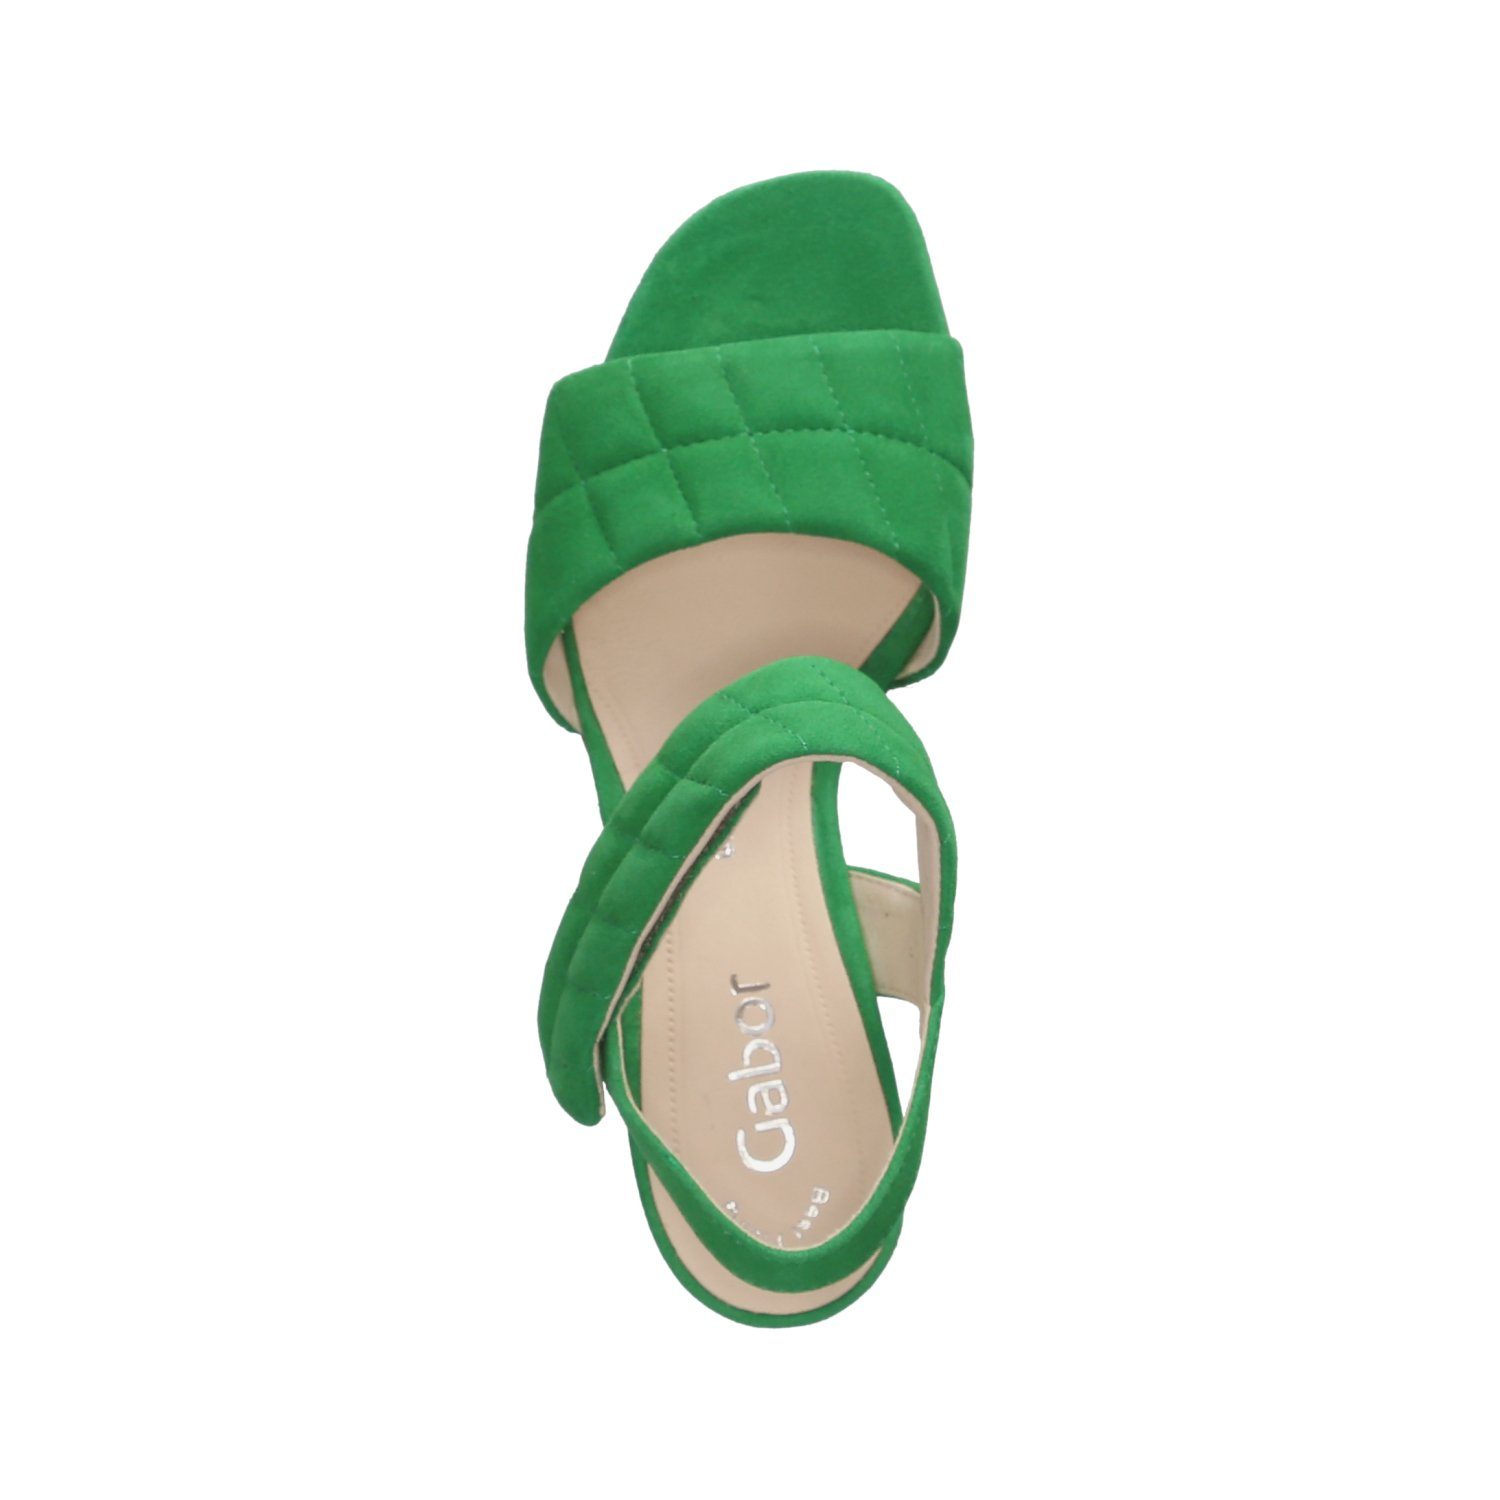 Sandaletten / 19) Sandalette (verde Gabor Grün